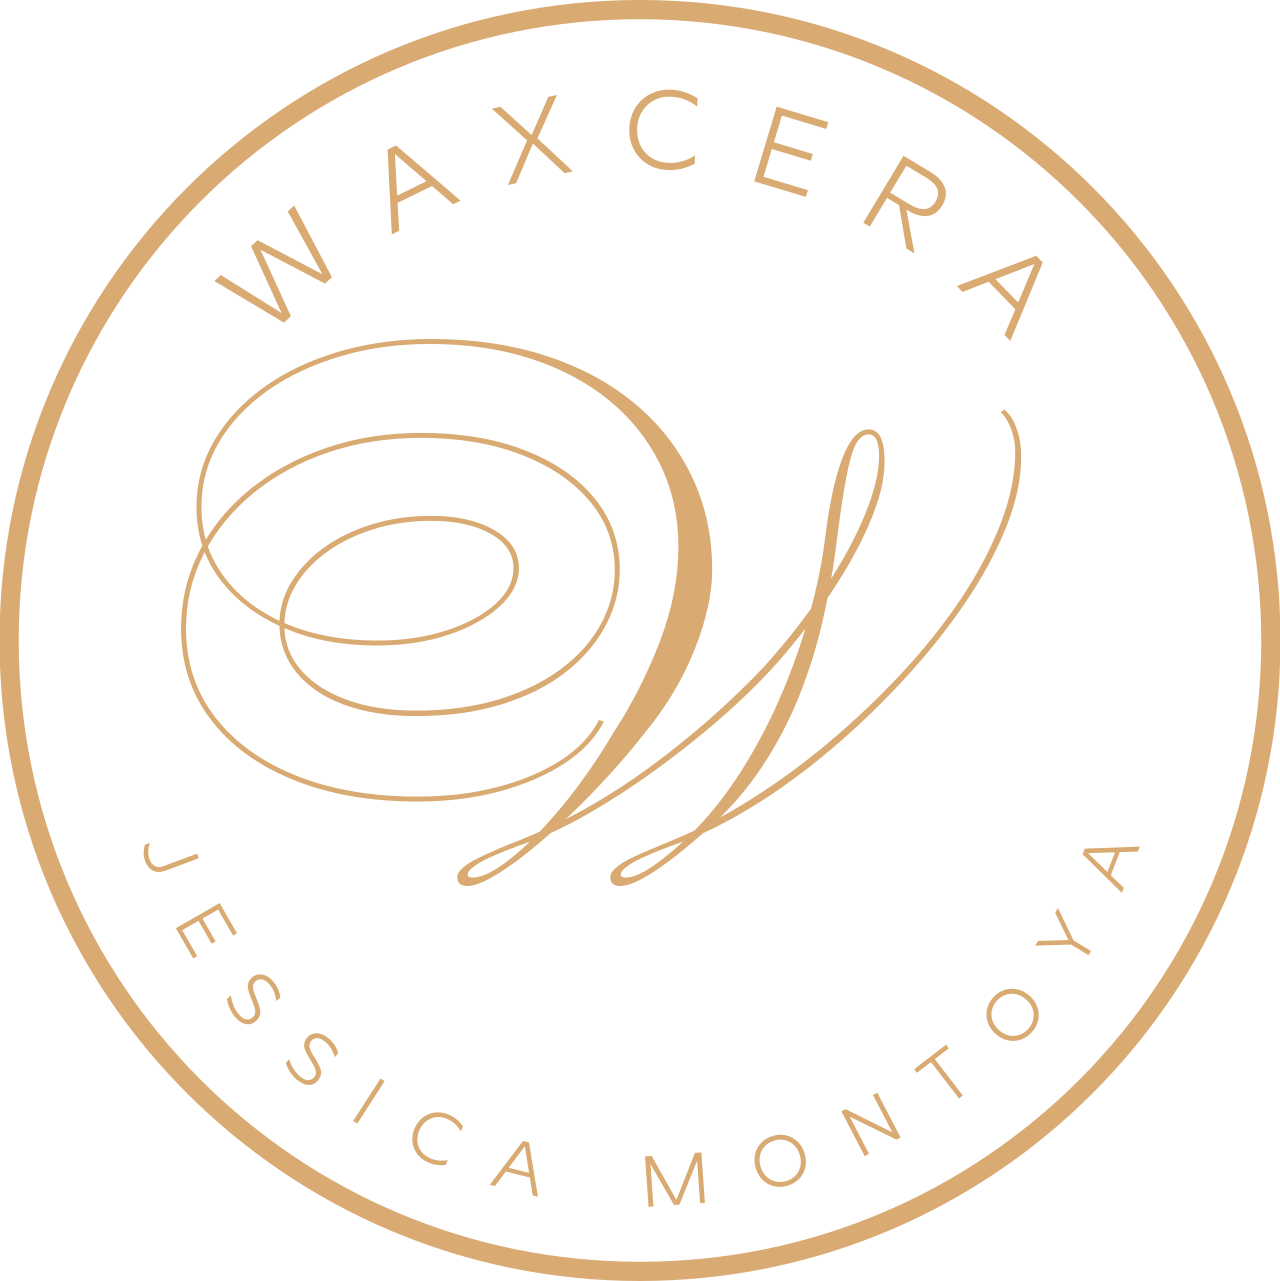 WAXCERA's web page